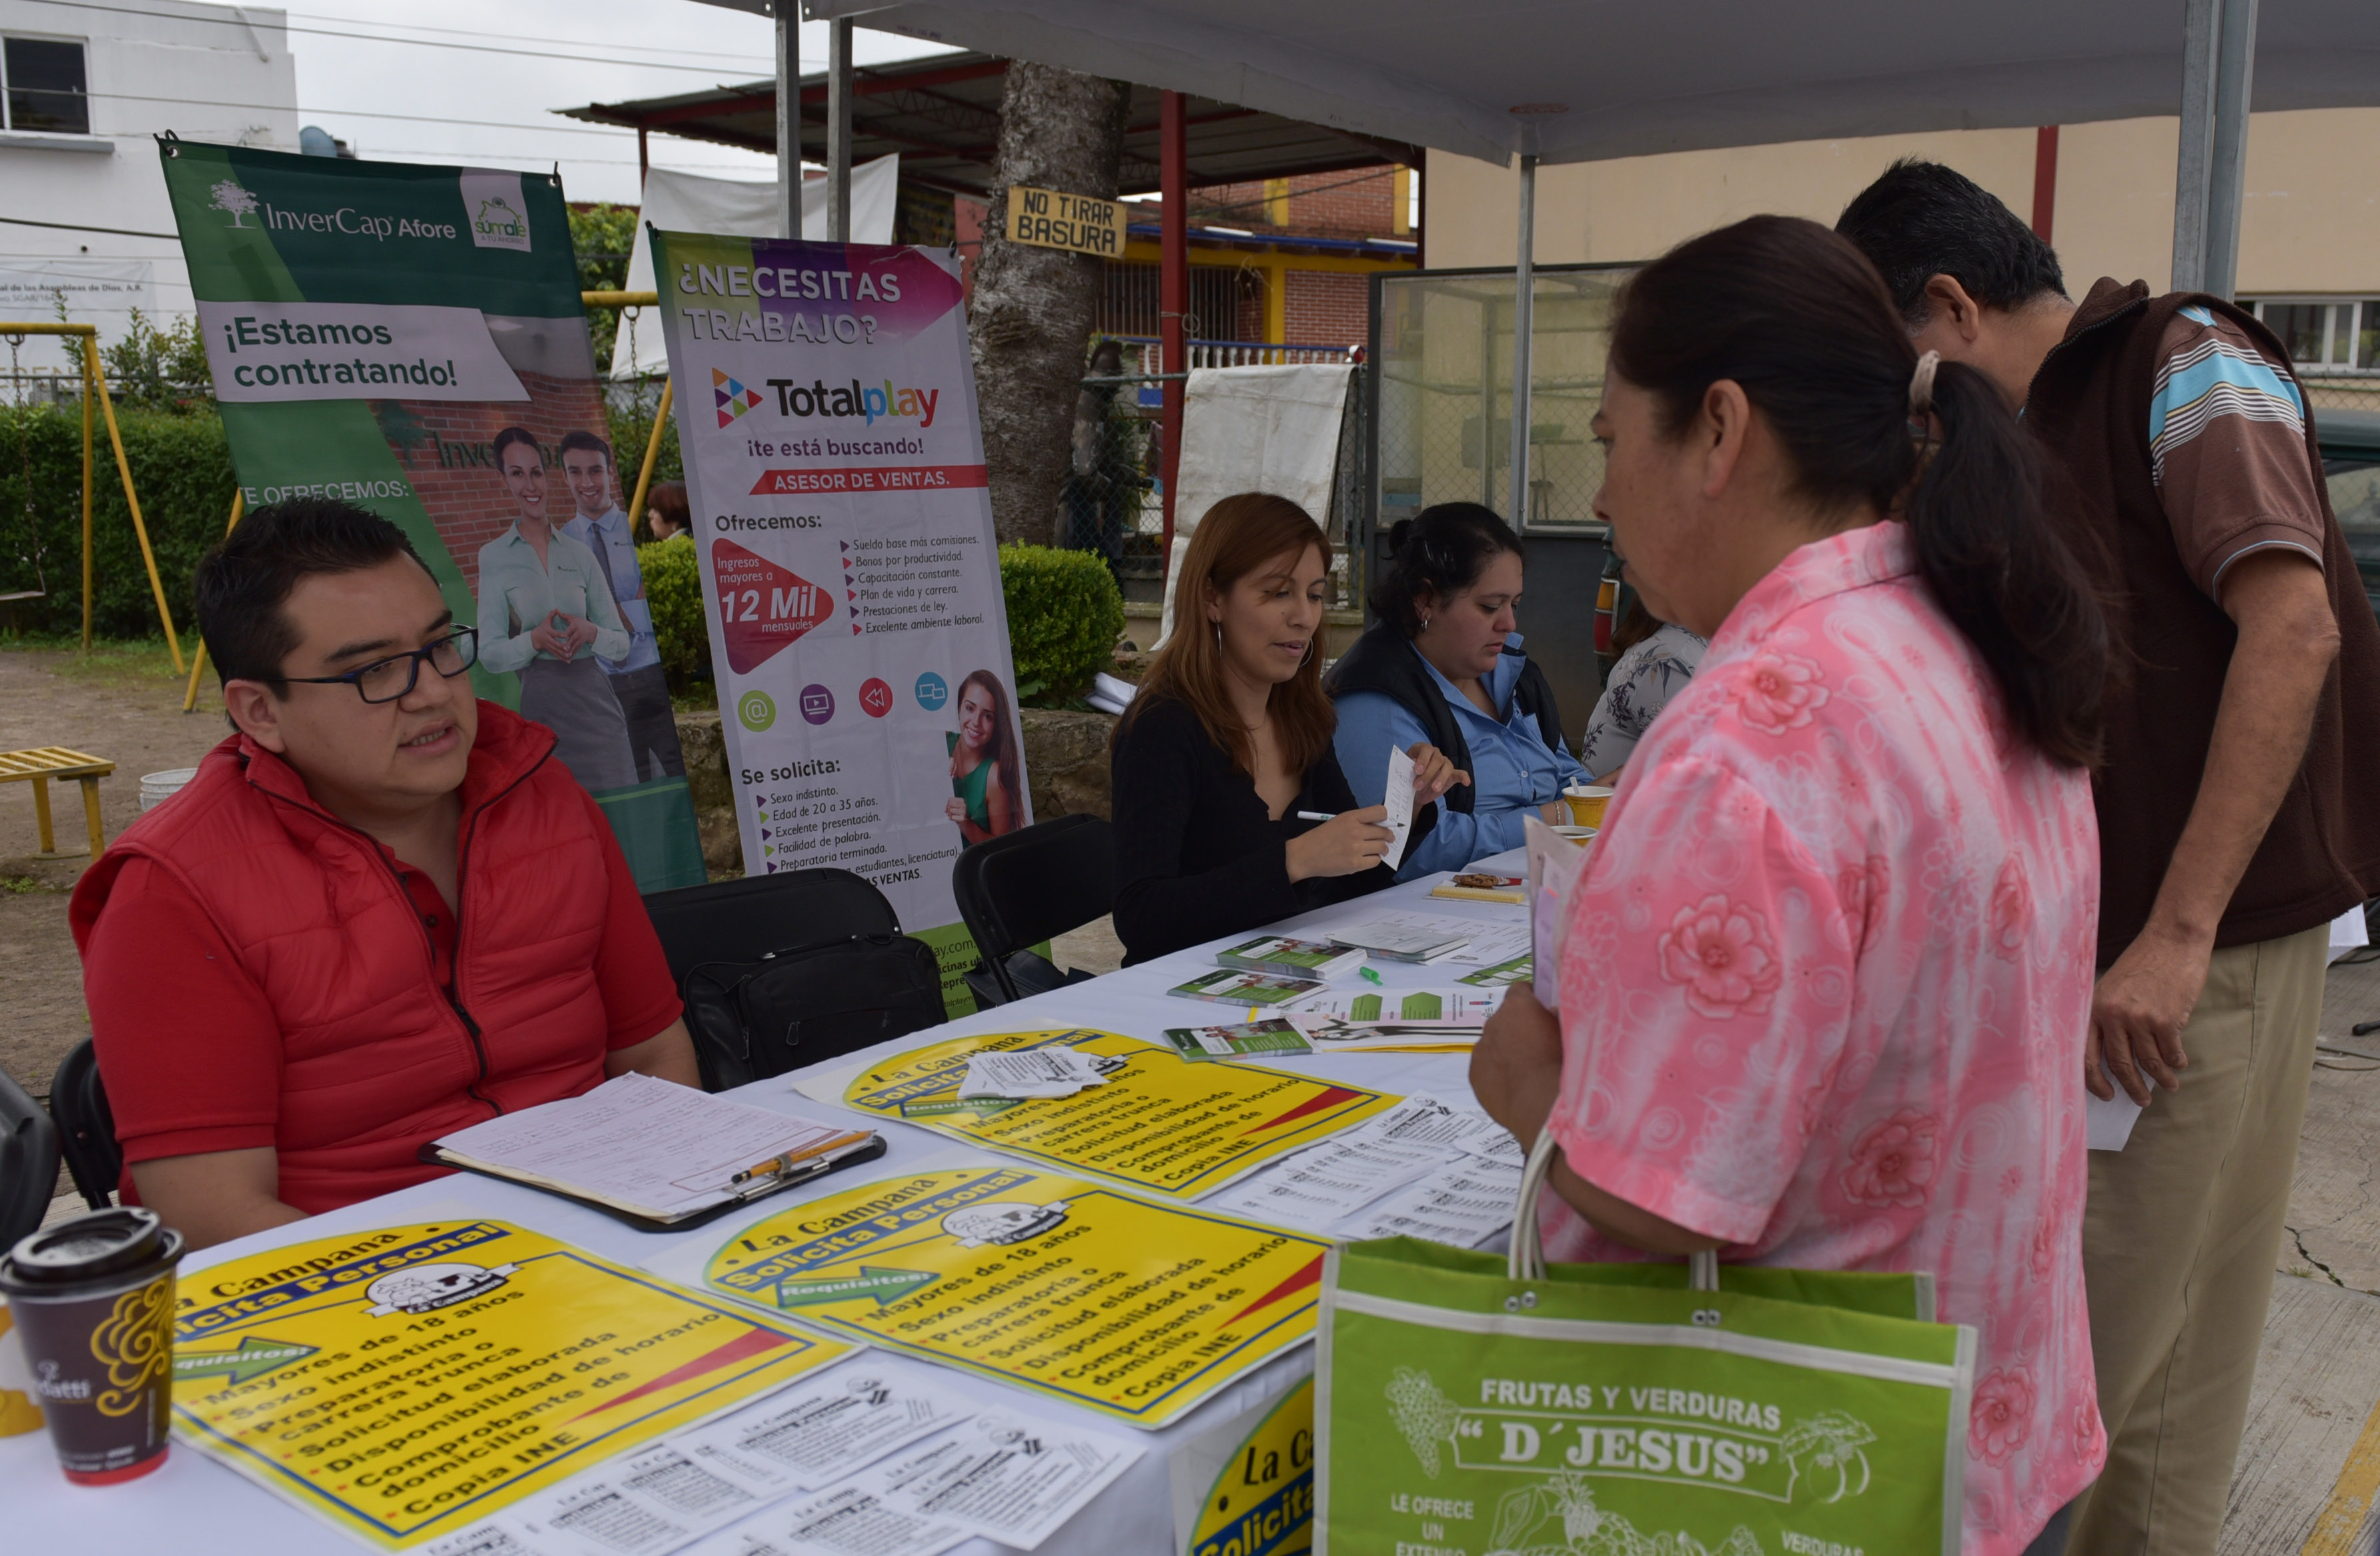 Segunda Feria del Empleo en Xalapa, ofrecerá más de 1500 vacantes